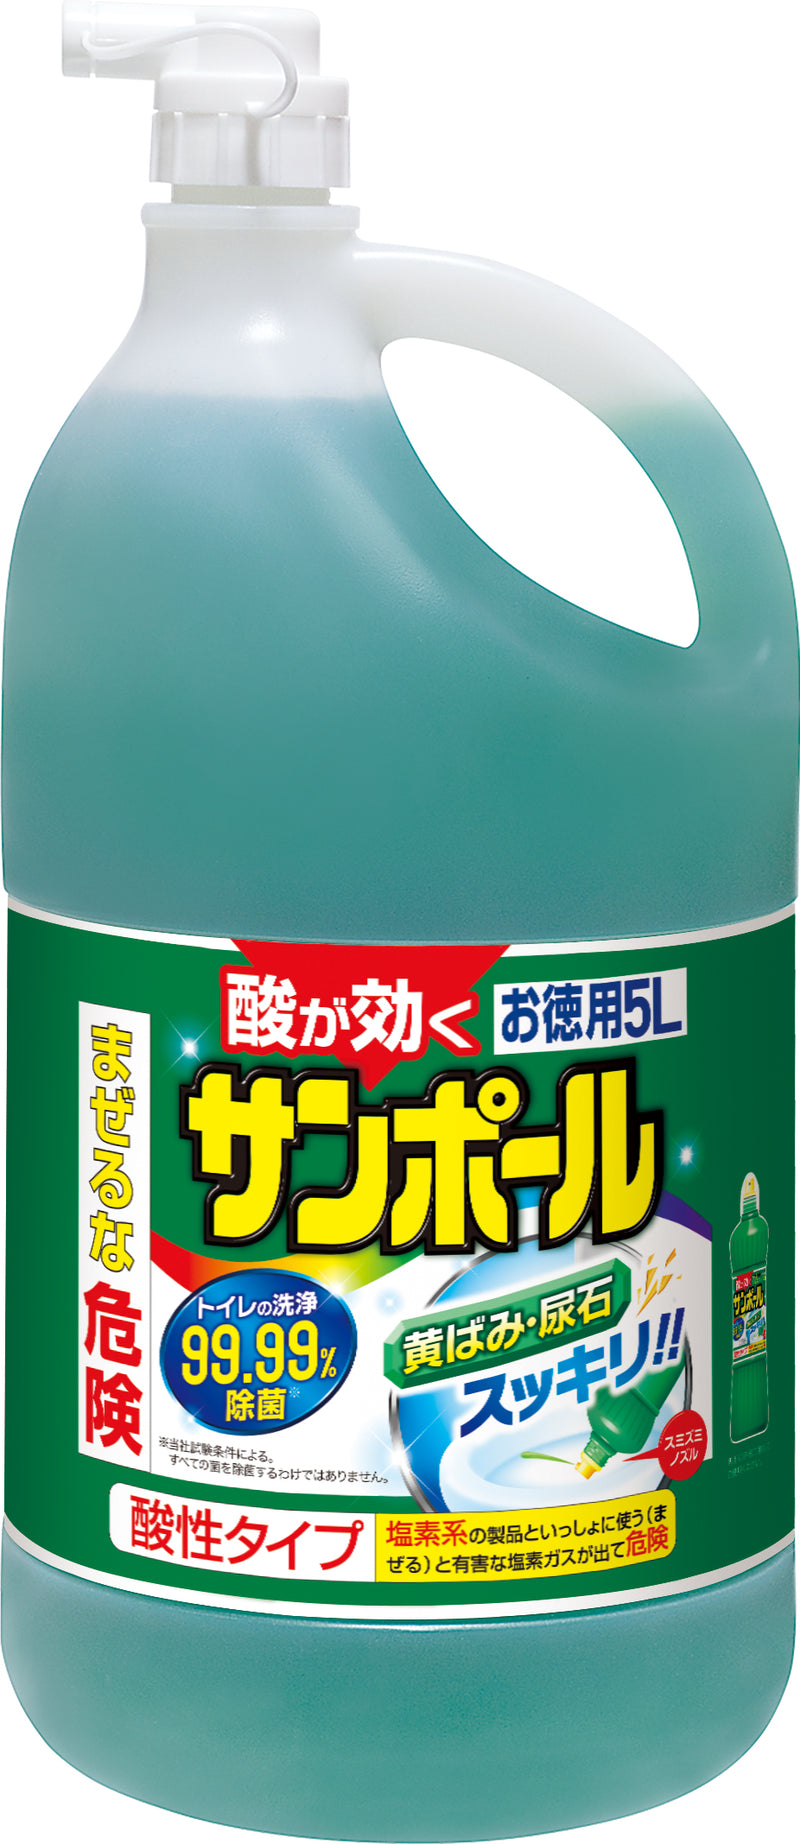 大日本除虫菊 KINCHO サンポール トイレ洗剤 尿石除去 大容量5L